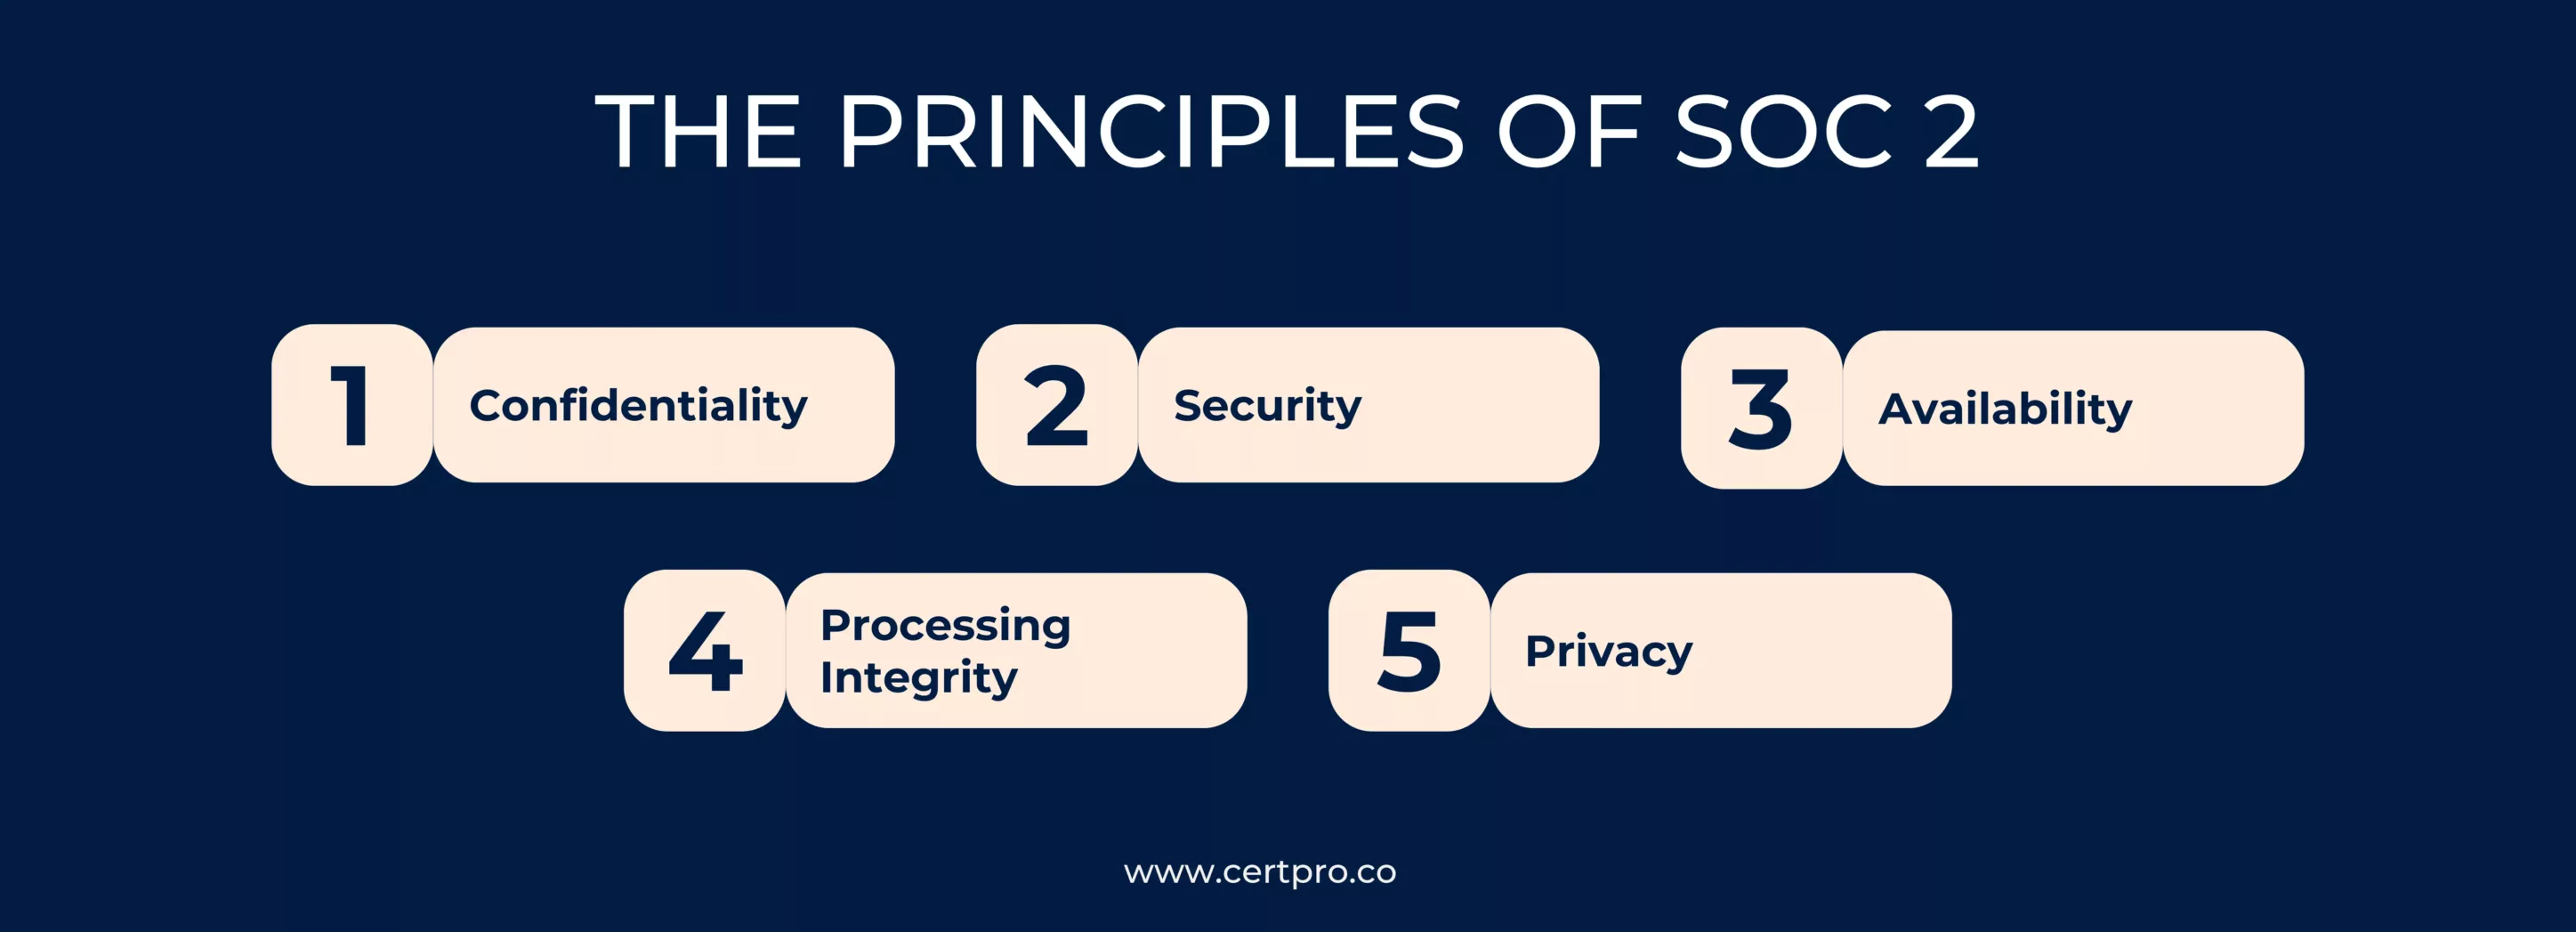 Principles of Soc 2